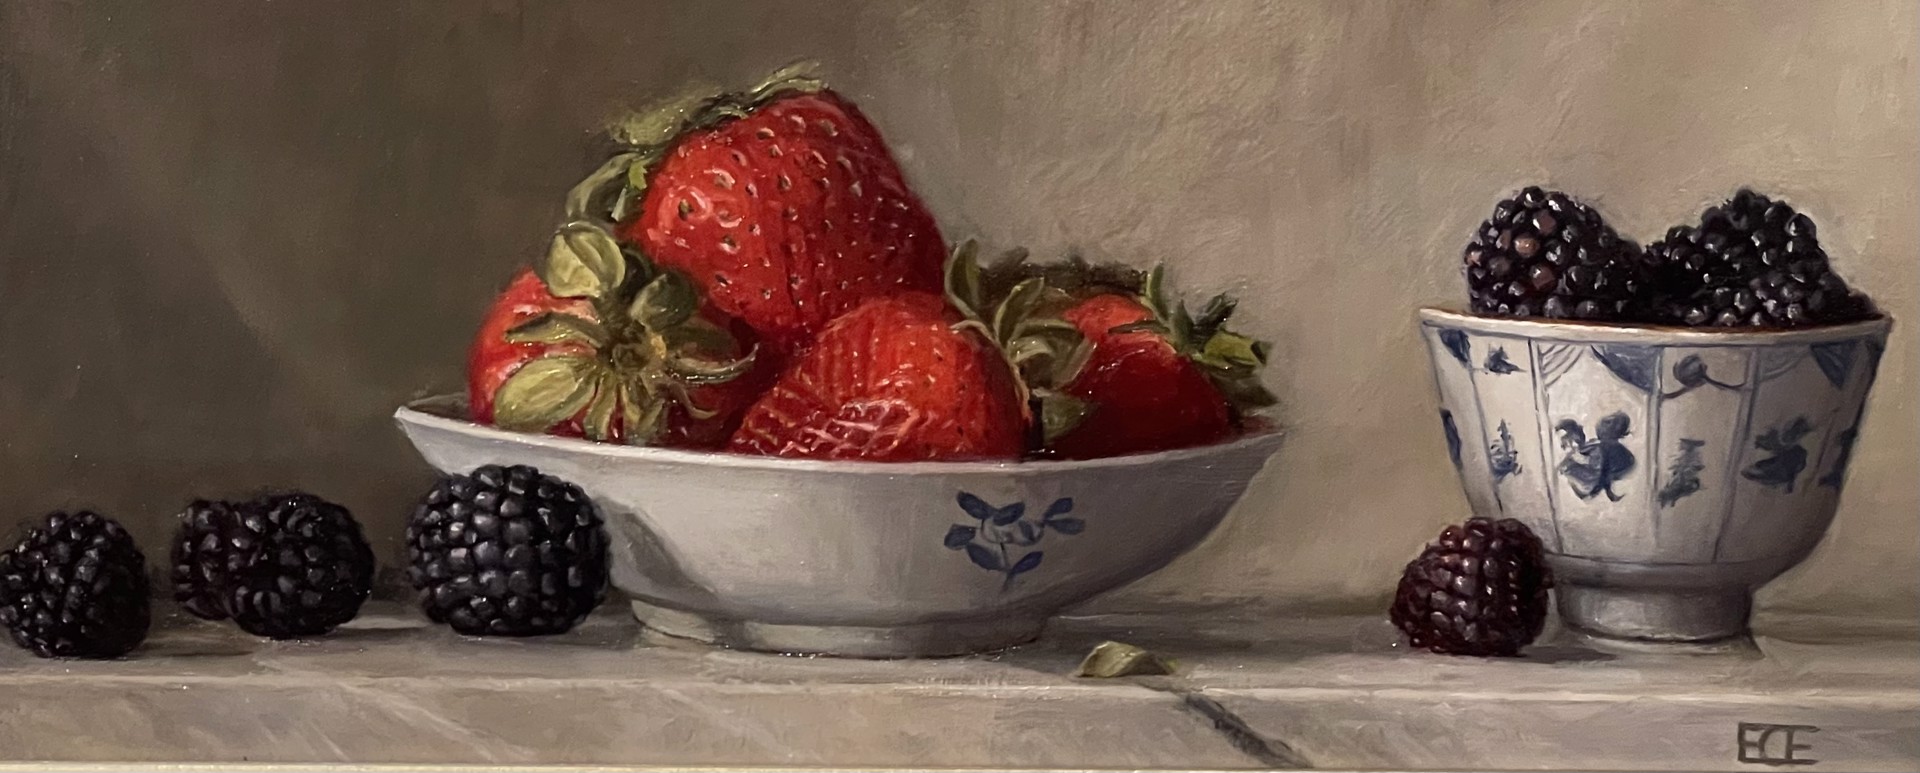 Strawberries & Blackberries by Barbara Efchak